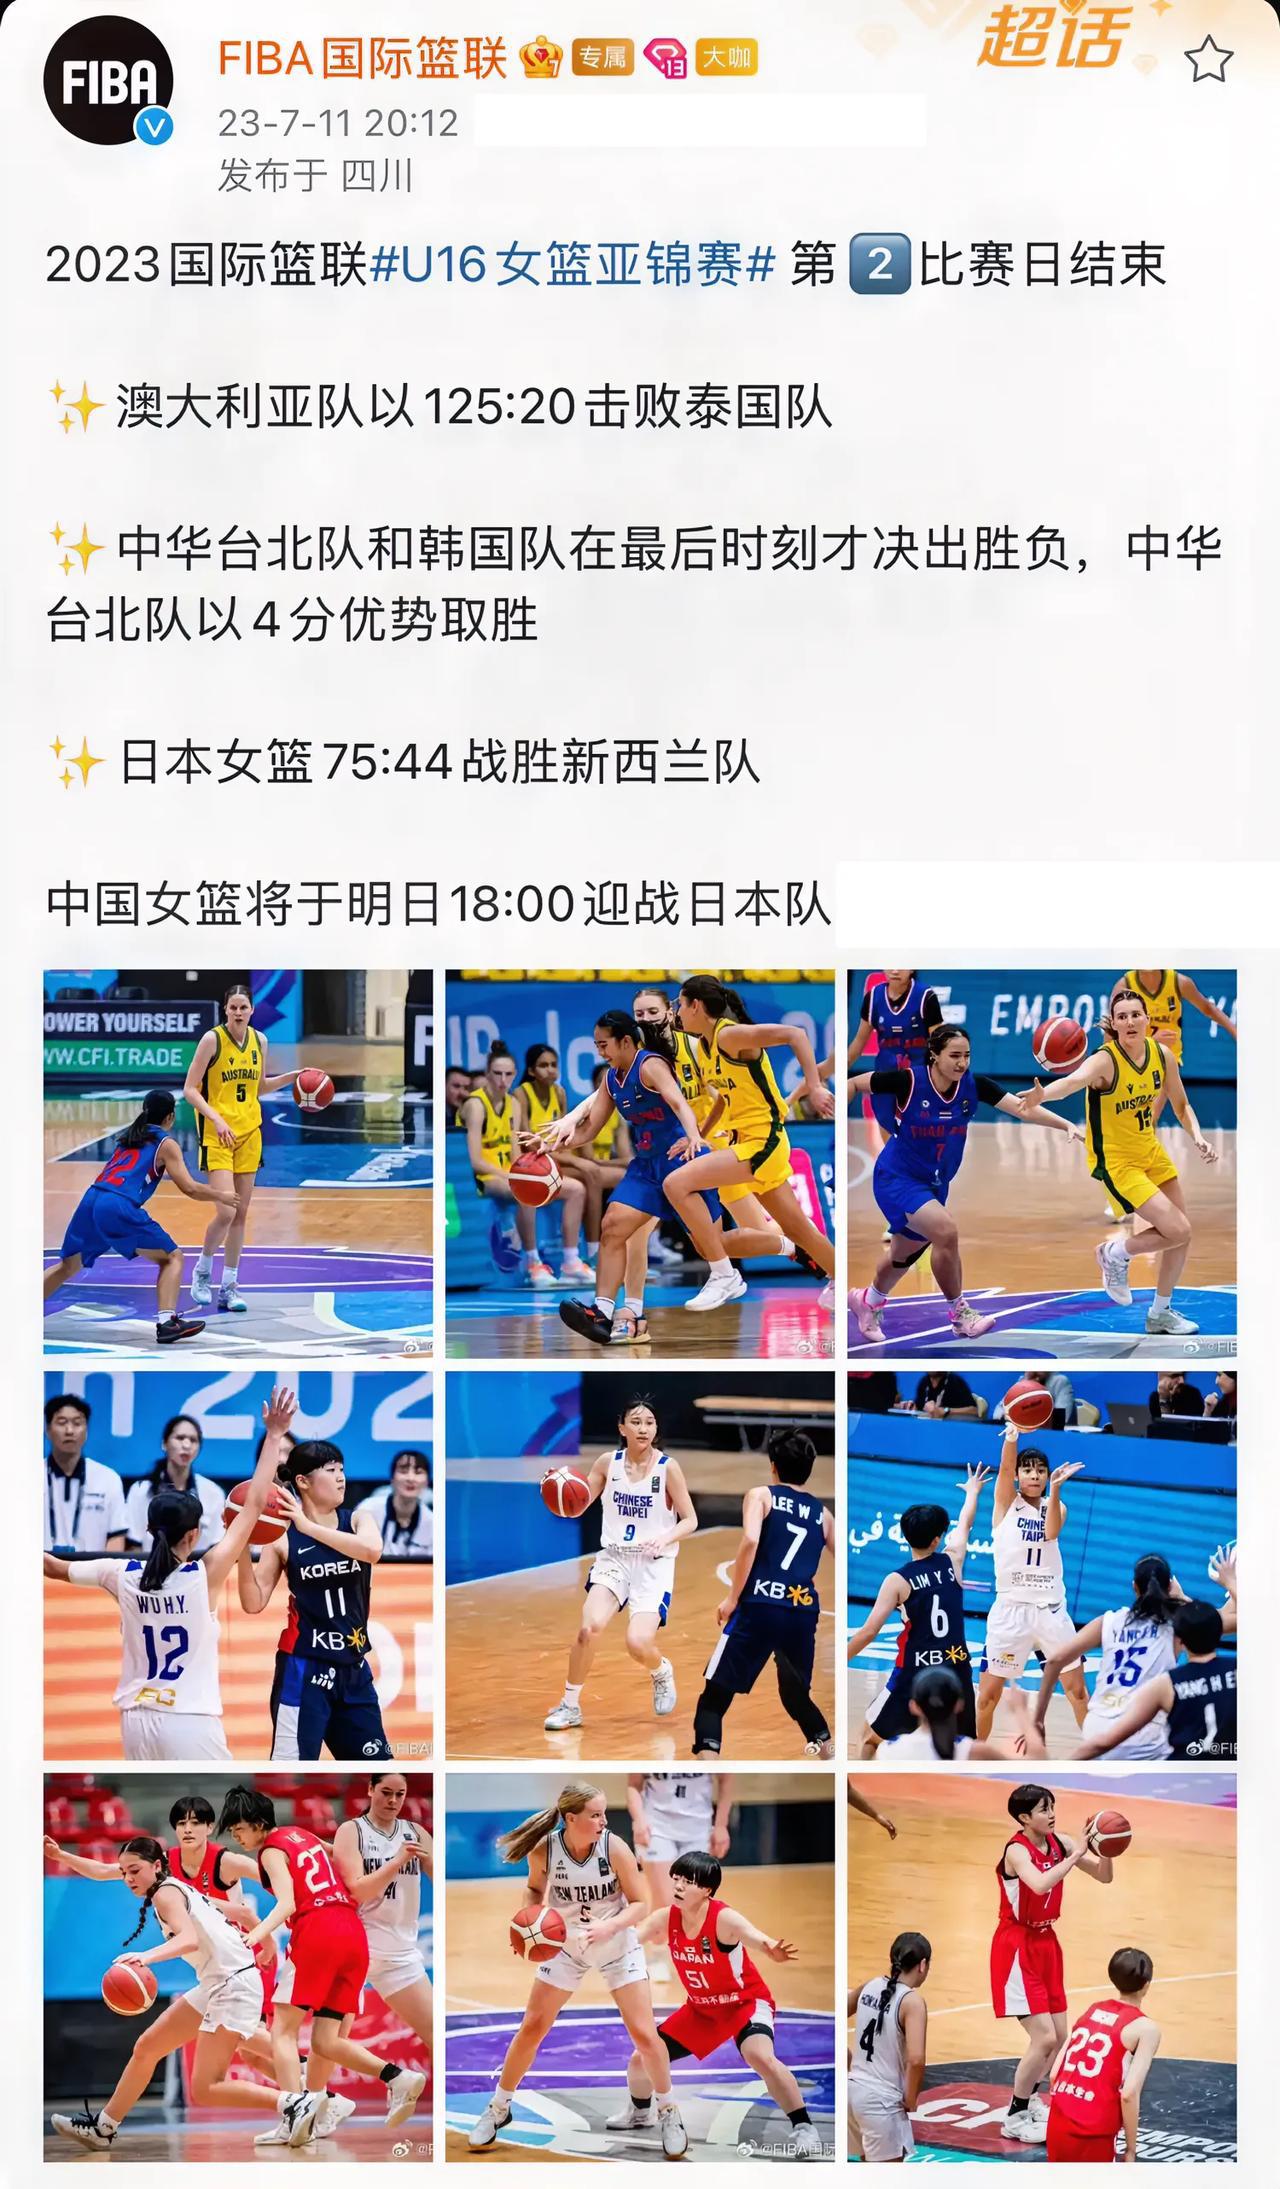 国际赛事，澳大利亚女篮125-20泰国女篮，这过百的分差可以载入史册。